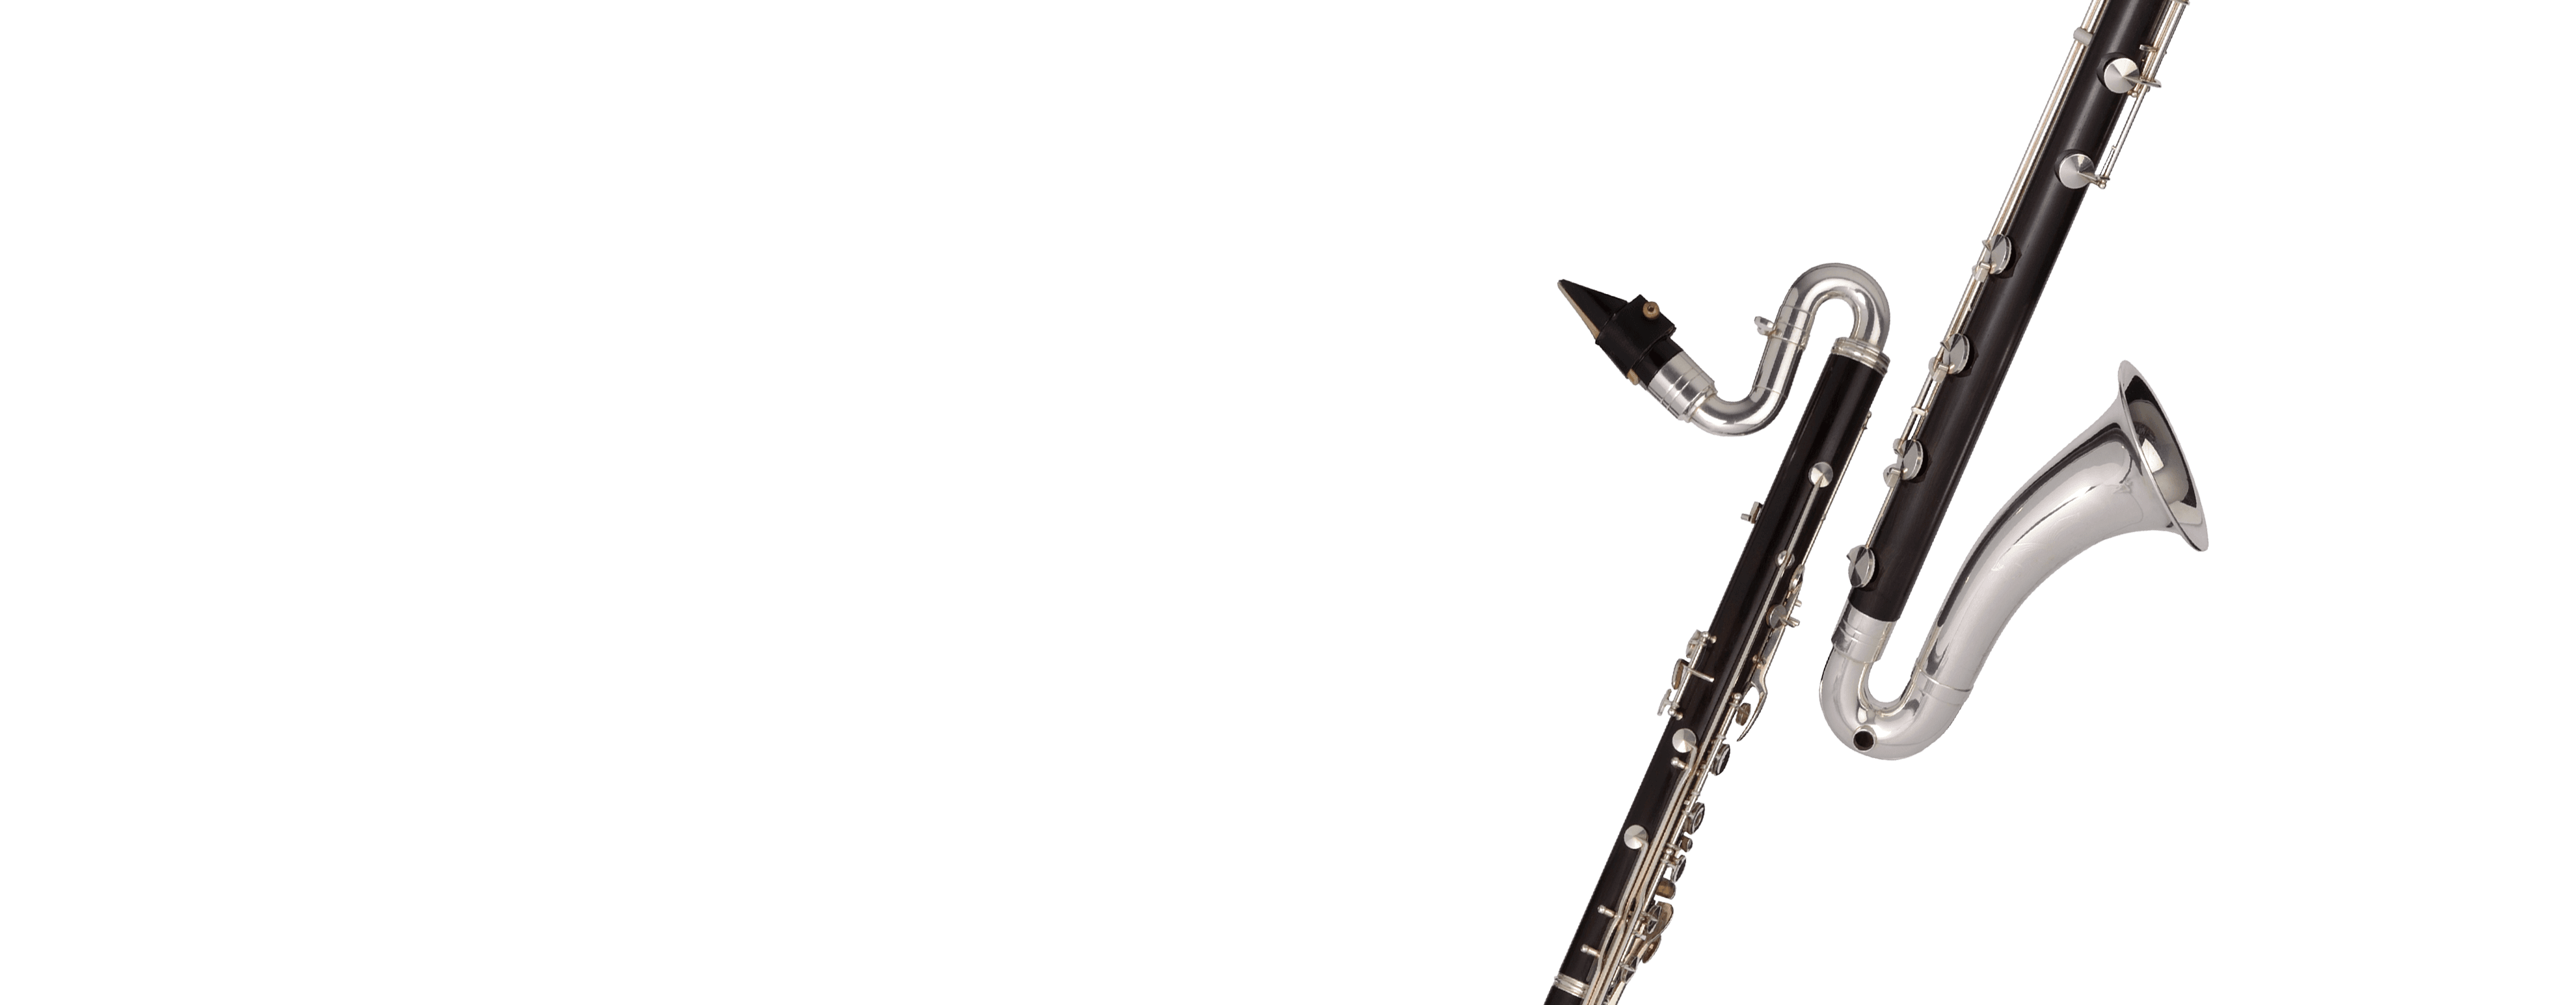 clarinet hero